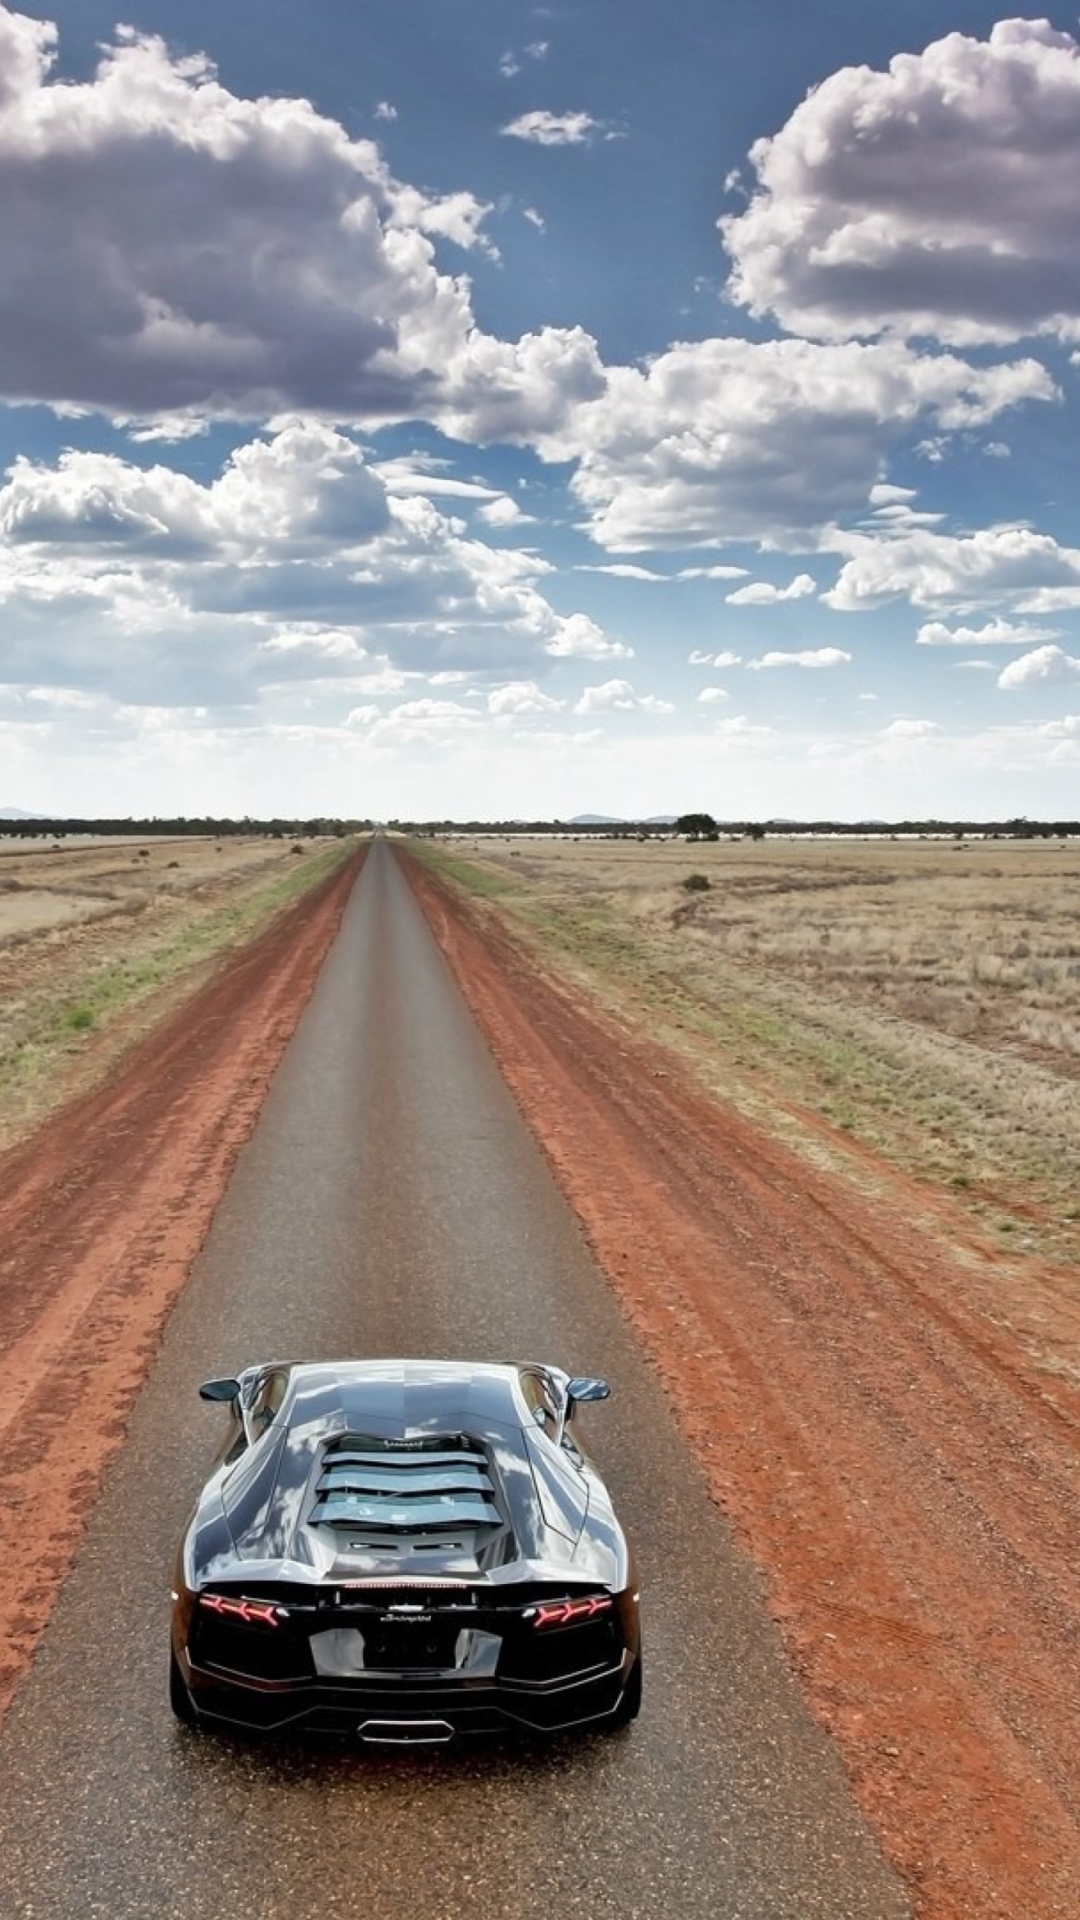 Lamborghini Aventador On Empty Country Road wallpaper 1080x1920